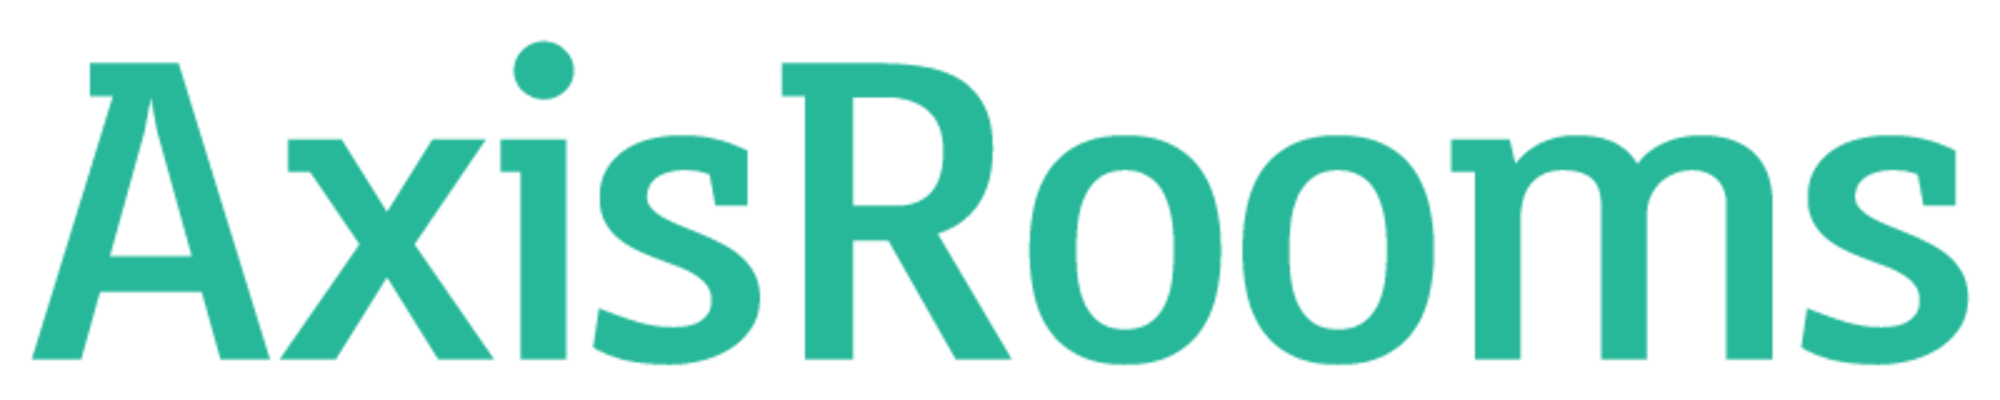 AxisRooms logo